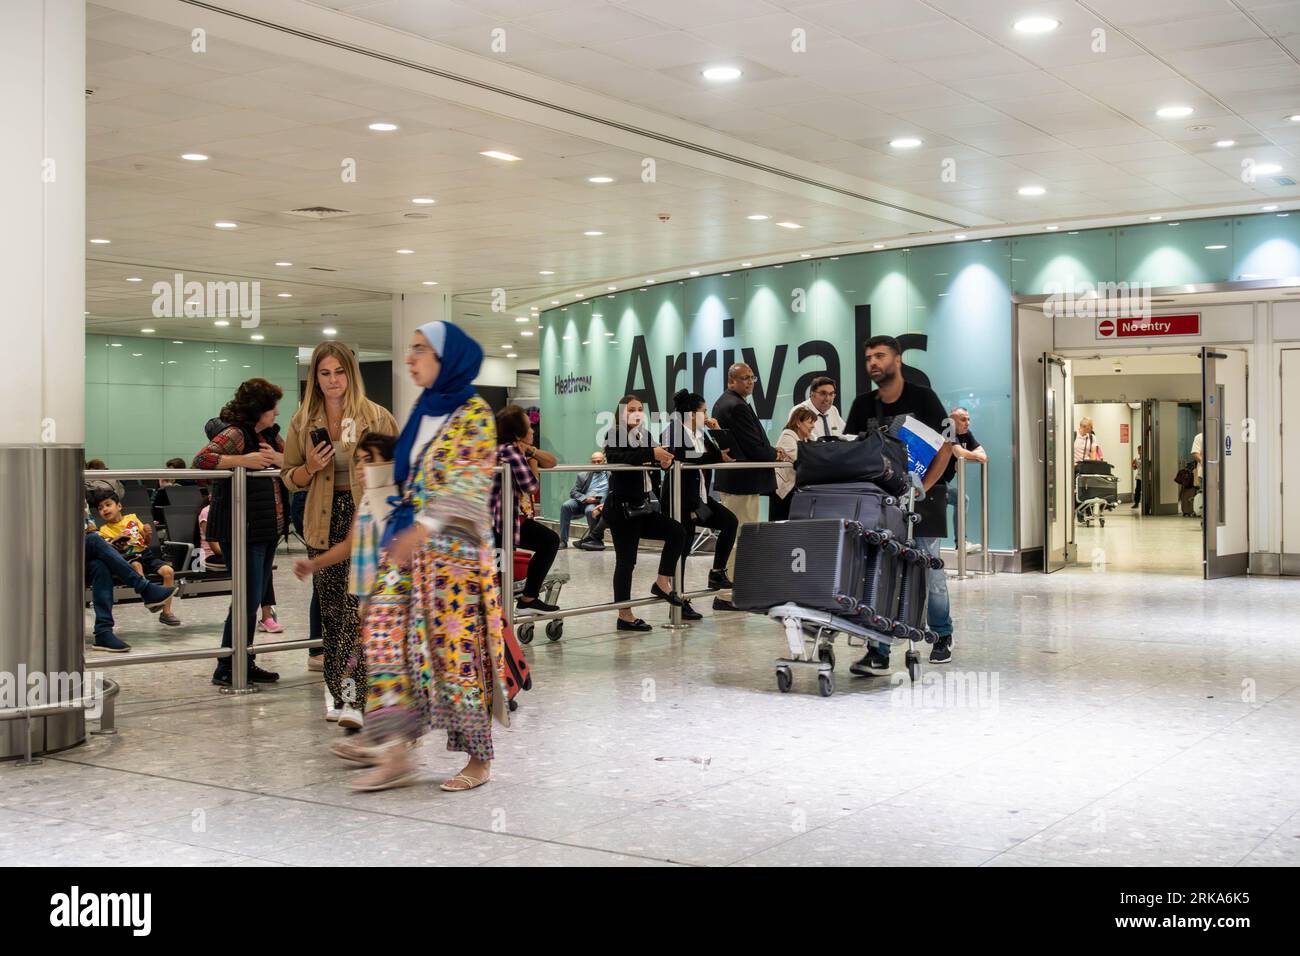 I passeggeri che arrivano al Terminal 3 dell'Aeroporto Heathrow di Londra, passano nella sala degli arrivi Foto Stock